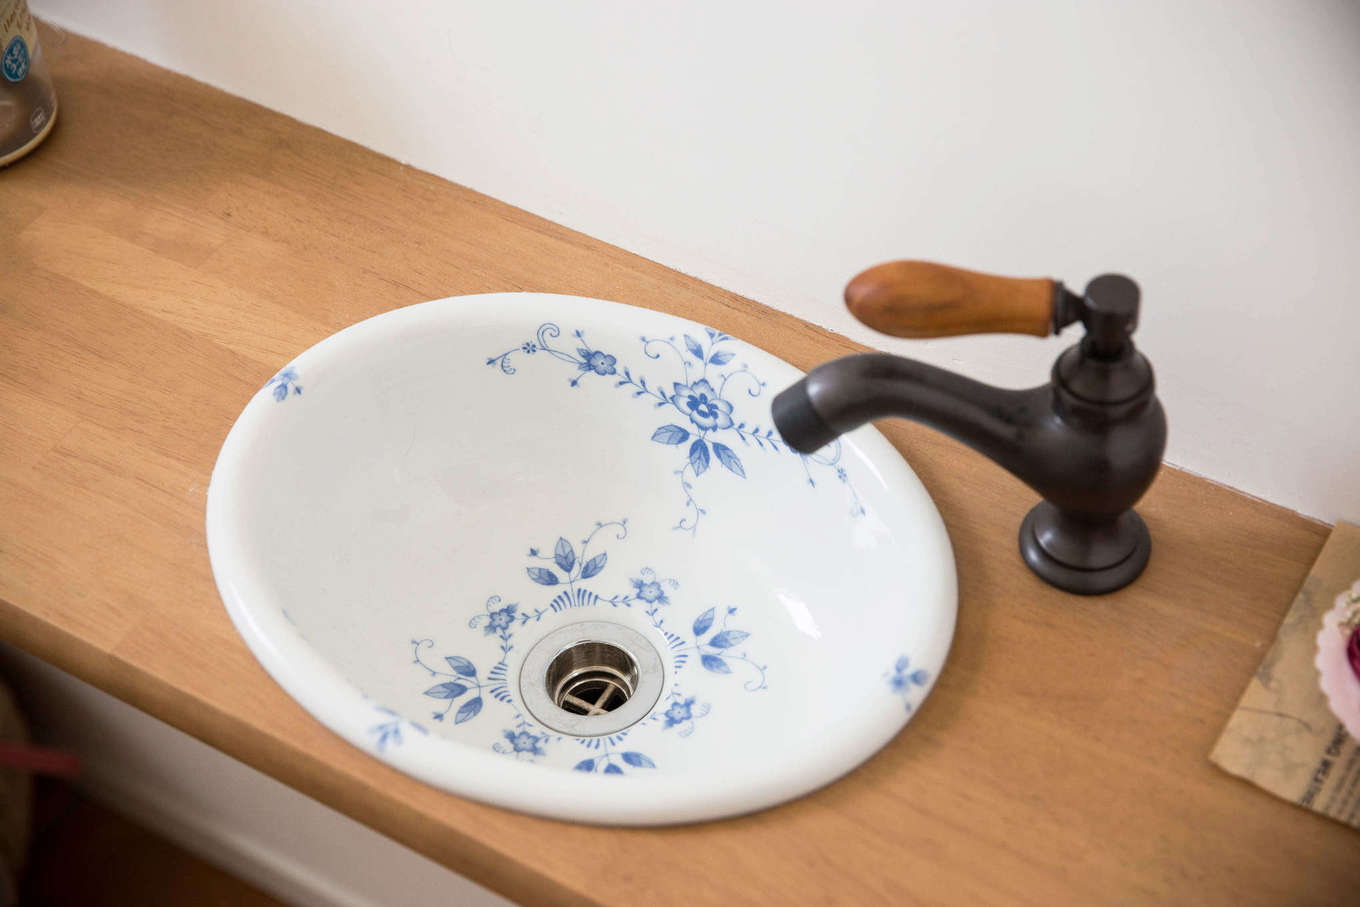 Bồn rửa tay trong phòng tắm được thiết kế với vòi nước kiểu cổ điển, bồn sứ trắng với hoa văn màu xanh lam, tinh tế đến từng chi tiết nhỏ.